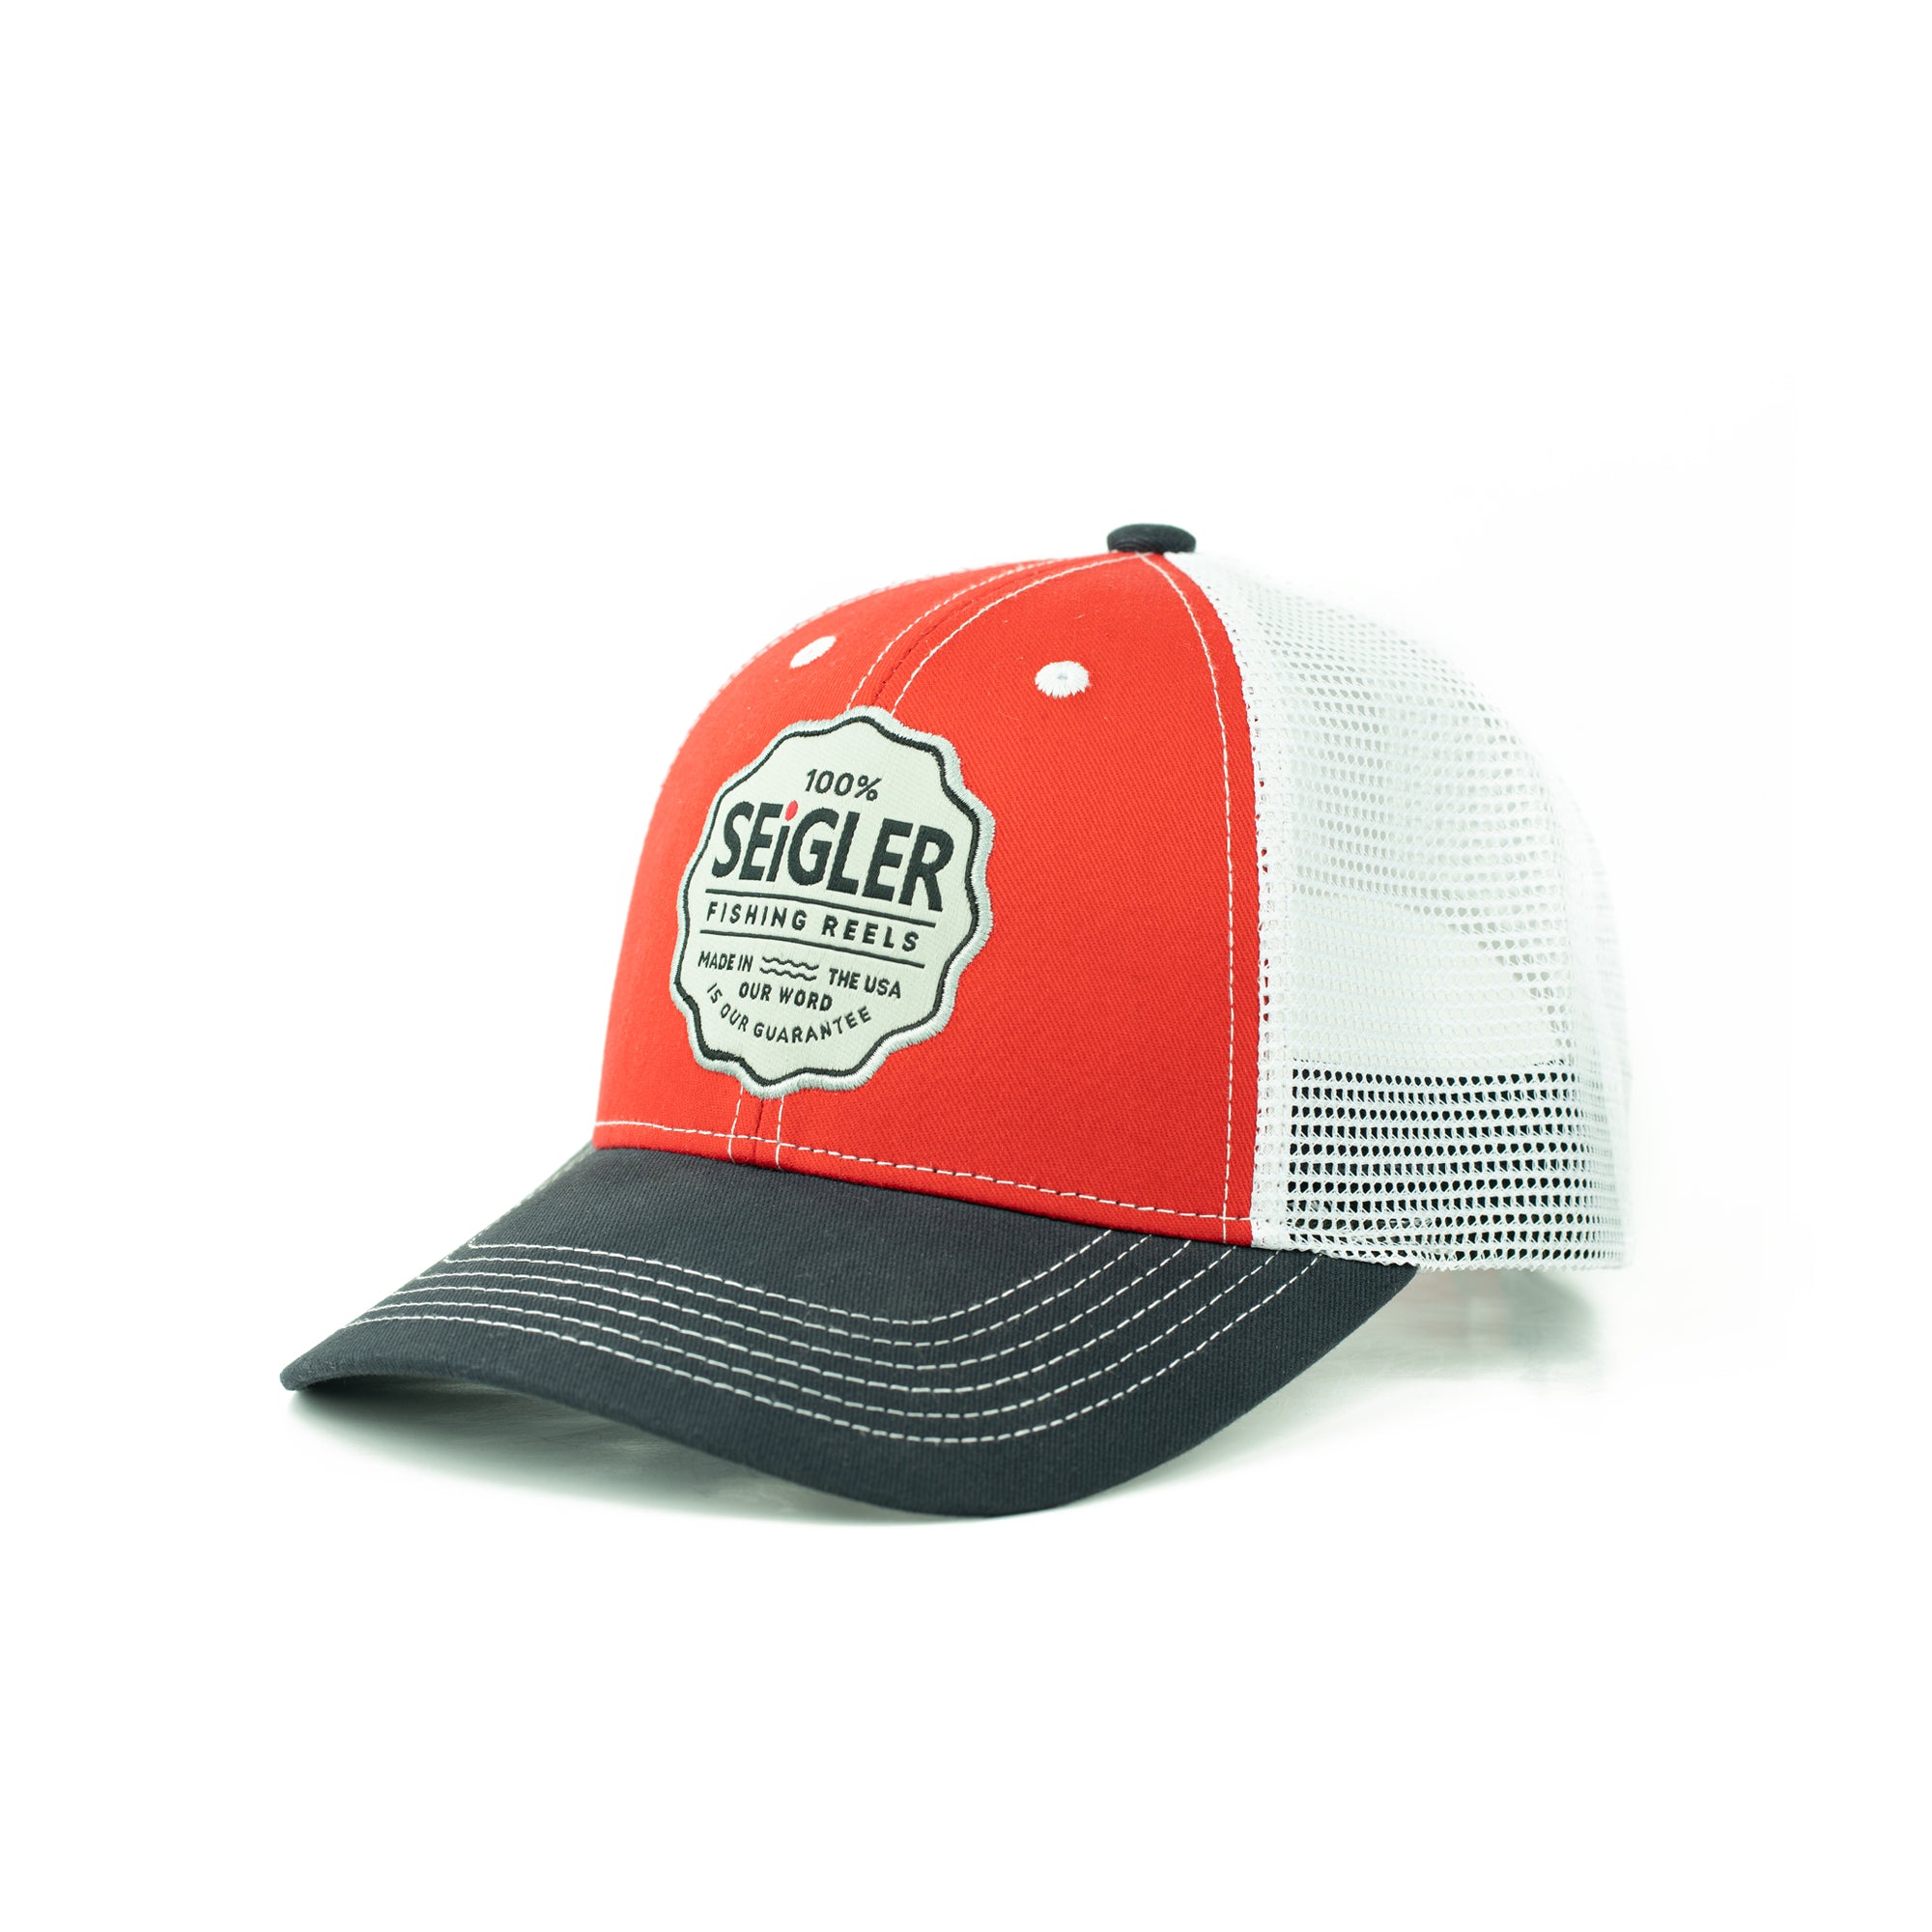 SEiGLER Trucker Hat - Red, White, & Blue | SEiGLER Fishing Reels